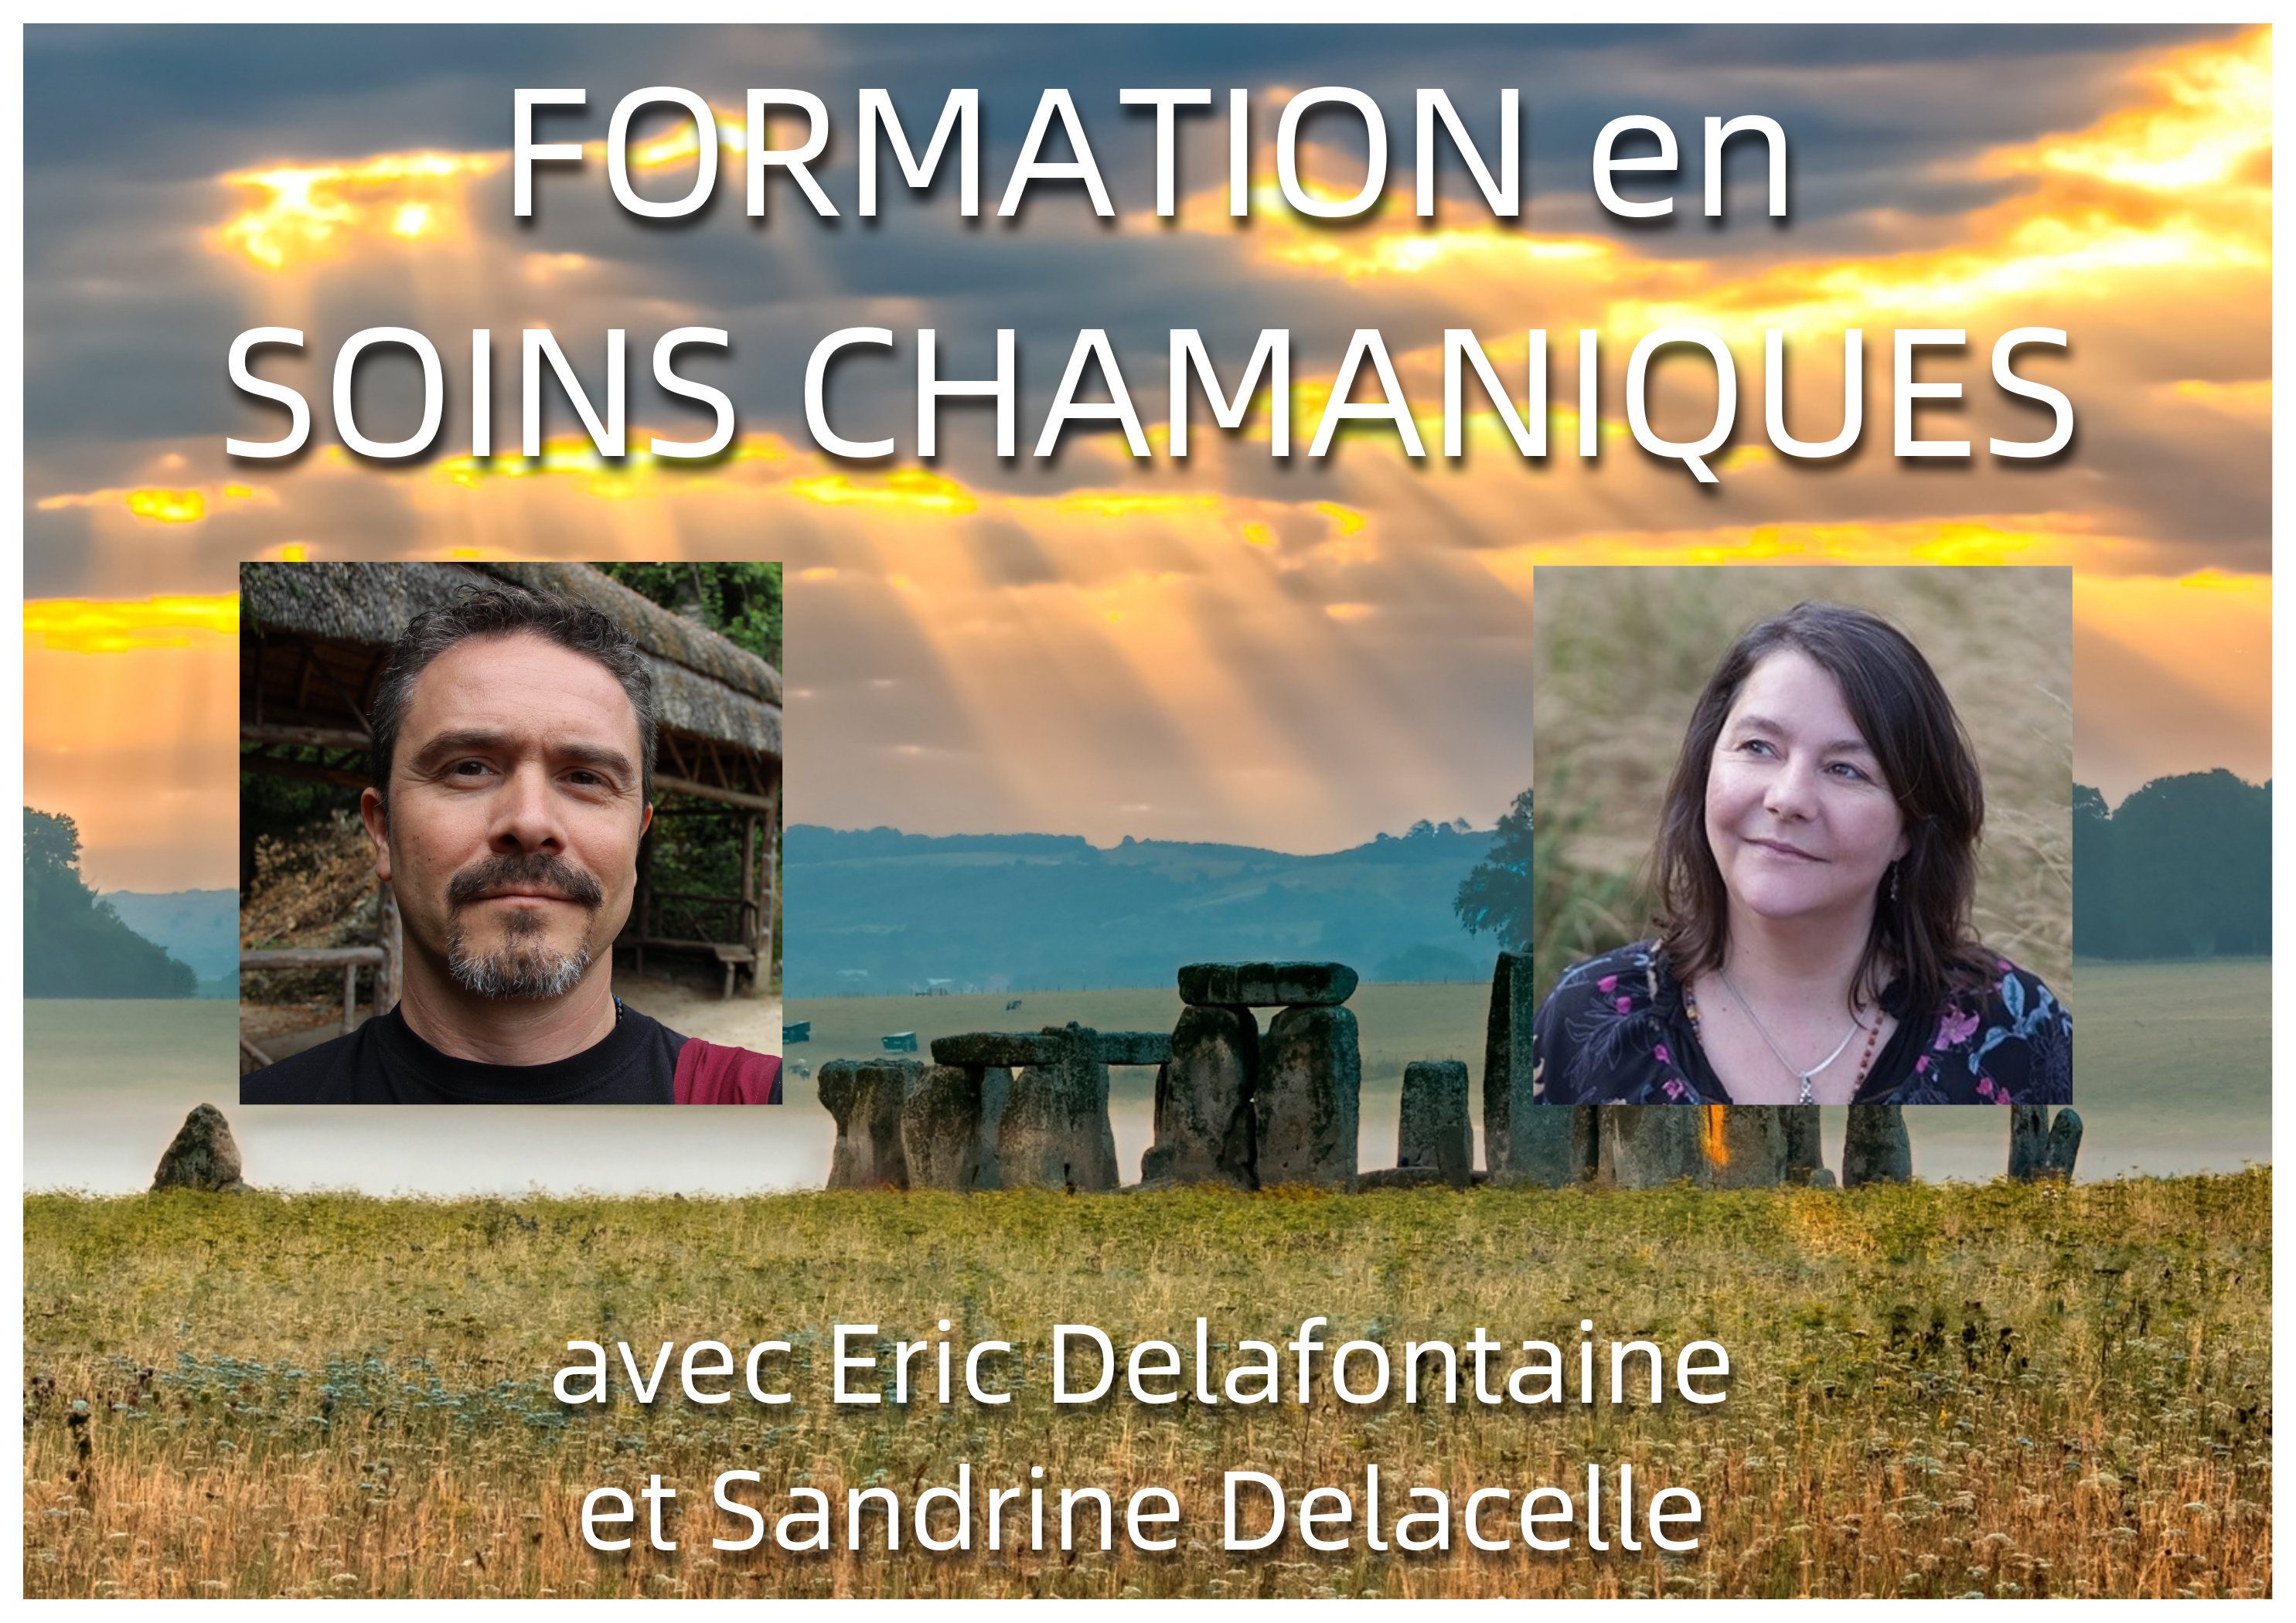 Soins chamaniques Eric Delafontaine et Sandrine Delacelle